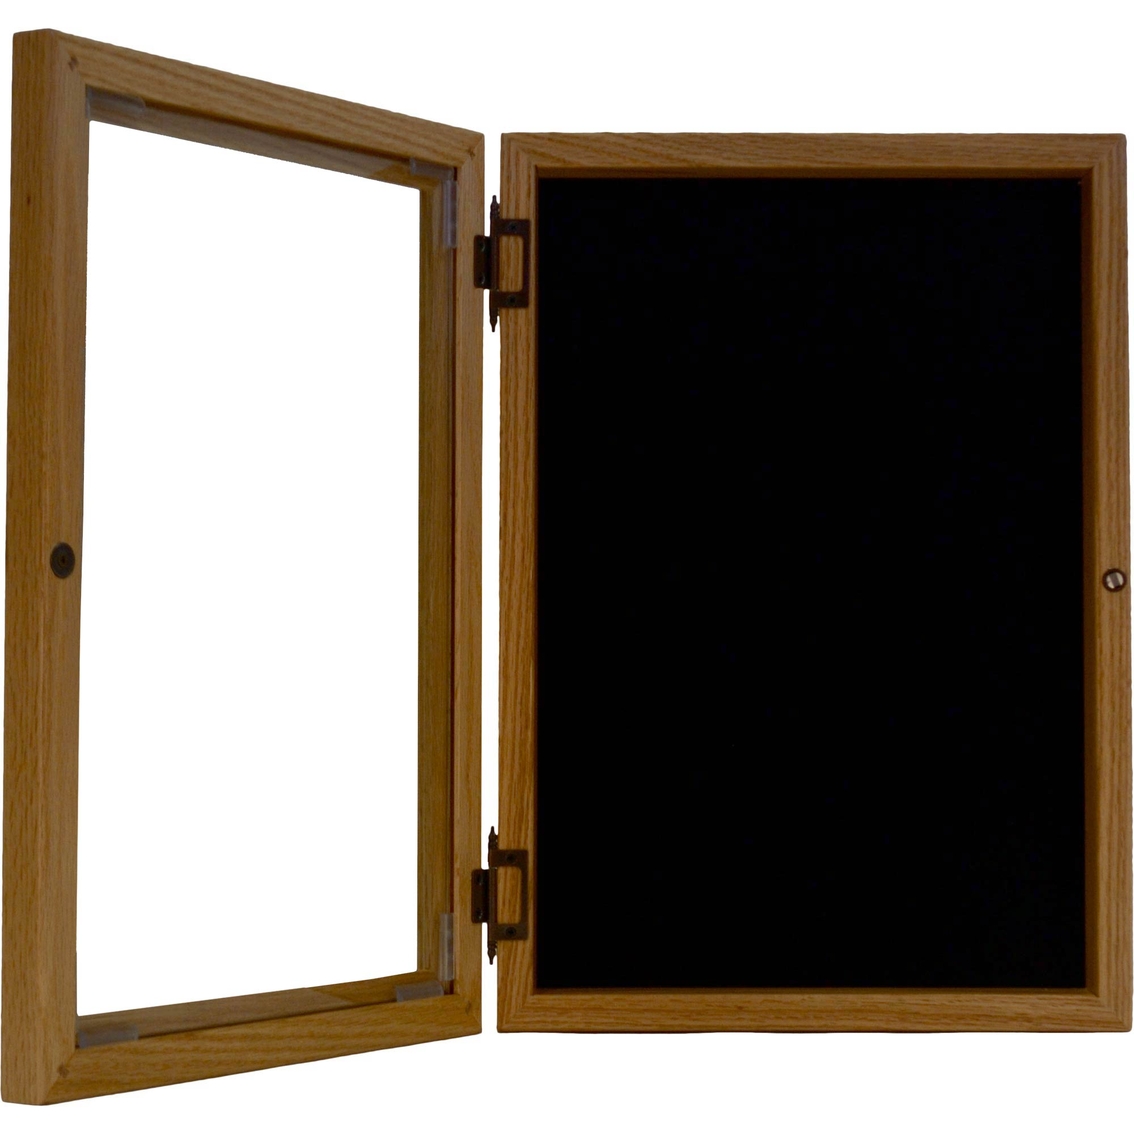 DomEx Hardwoods Shadow Box With Glass Door - Image 2 of 2